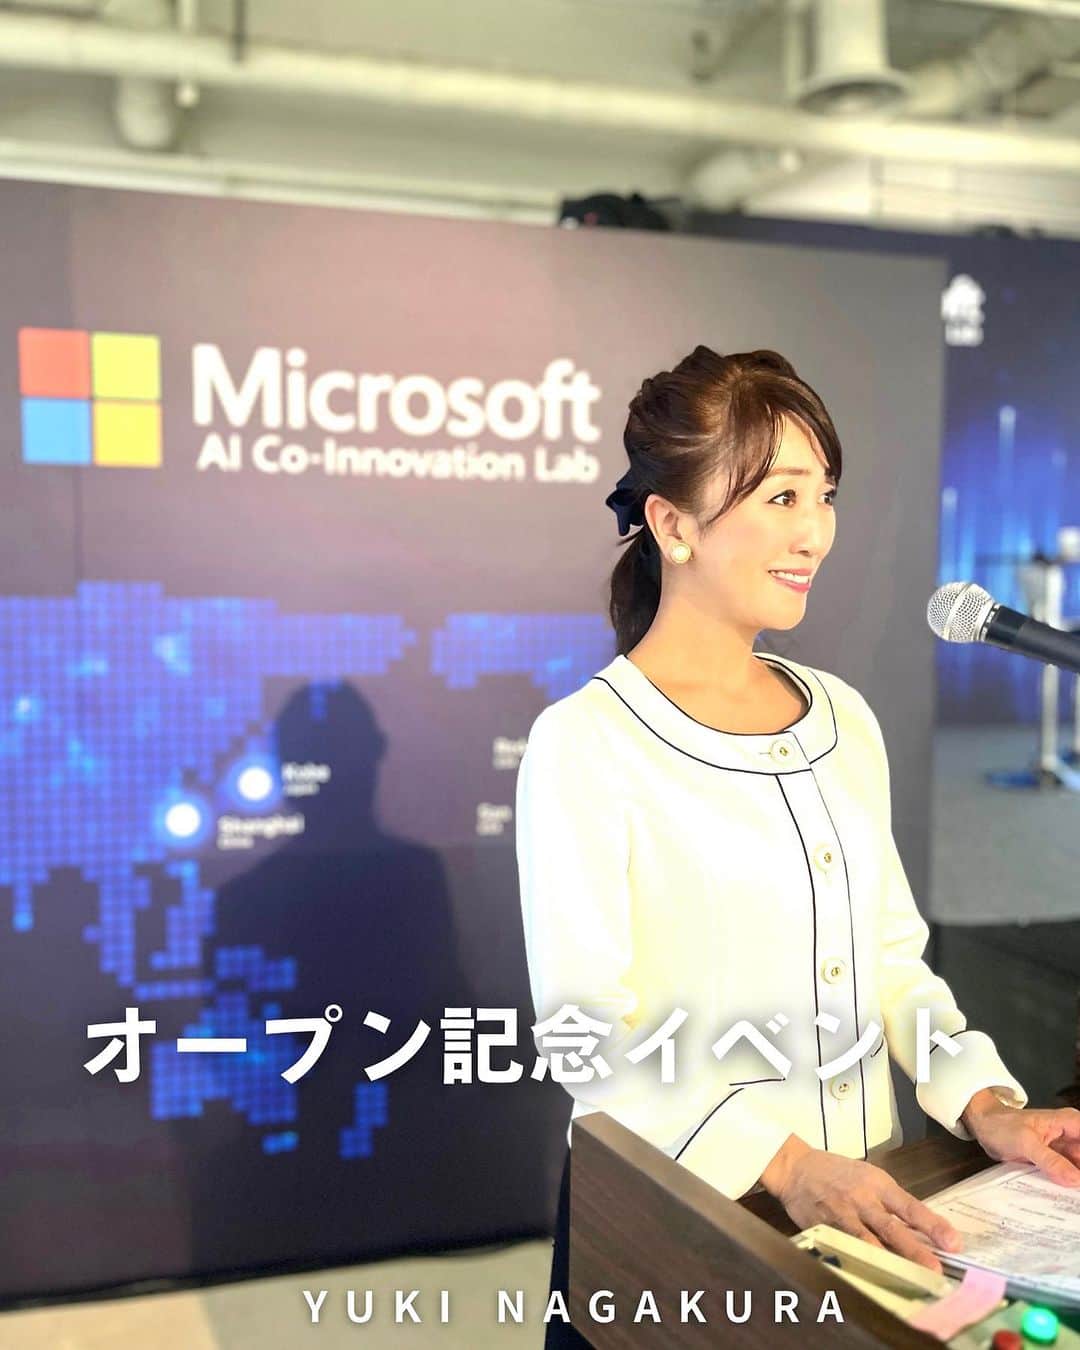 永倉由季のインスタグラム：「. . ⁡ 神戸に日本で初めて開設した 「Microsoft AI Co-Innovation Lab for Japan 」     オープン記念イベントの 第2部の司会を担当させて頂きました。   ⁡ 全てAIに頼るのではなく 共創しながら ビジネスに活用するのだそうです。 ⁡ (農業にも使われていて興味深かった🌾) 　　　 ________________ 　　　　 ⁡ 新人の時からお世話になっている プロフェッショナルな皆さんは 　　 　　　　　　 安心かつ 面白くて楽しくて帰りたくなくなる(笑) (一人ヘンテコな顔してはる) ⁡ 　　　　　　　 現場は 出ている人だけでなく オモテに出ていないスタッフさんがいるから 成り立ってます✨ . . ⁡#神戸 #microsoftaicoinnovationlab Lab   #オープンイベント  #ai   ⁡ ▶︎アメブロ更新　↓プロフリンクから　　　　　　　　　　　　　　　@yuki_nagakura67 ⁡ ✼••┈┈┈┈┈┈┈┈┈┈┈┈┈┈┈┈••✼  　　　　　 ▶︎アナウンサー・プライベート用Instagram @yuki_nagakura67 ⁡ ▶︎ブランディング用/魅せ方・伝え方・オススメ @yuki_nagakura_brushup_salon ⁡ ✼••┈┈┈┈┈┈┈┈┈┈┈┈┈┈┈┈••✼ ⁡ ⁡ #永倉由季 #フリーアナウンサー #司会者#司会業  #顔タイプ診断 #顔タイプアドバイザー #顔タイプ診断® #アナウンサー #女子アナ#女子アナコーデ ___________________________」